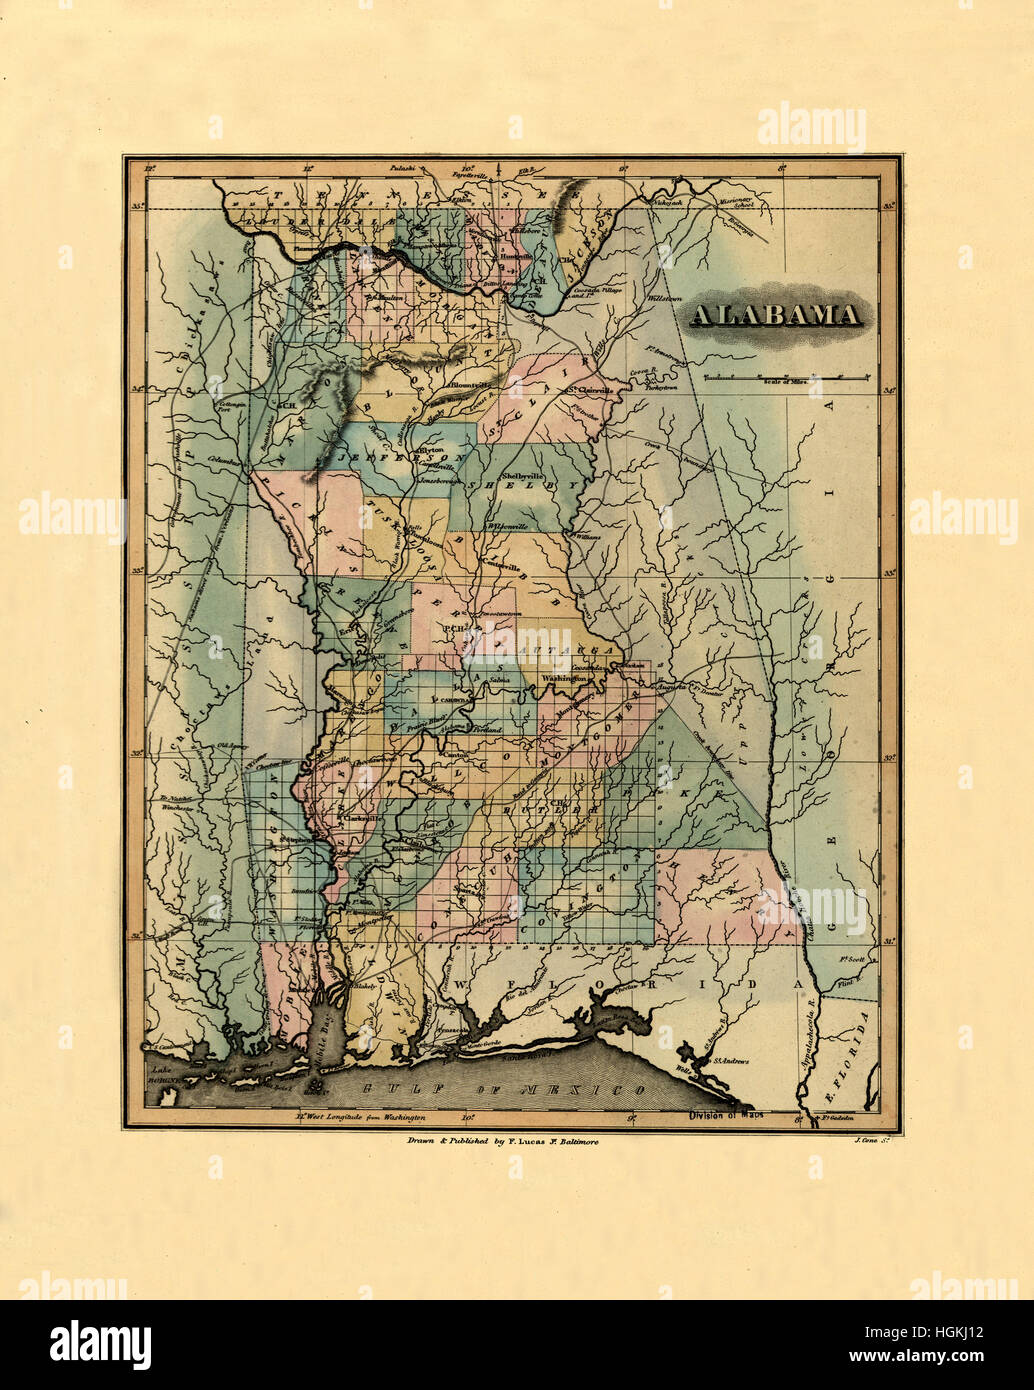 Site de l'Alabama 1826 Banque D'Images